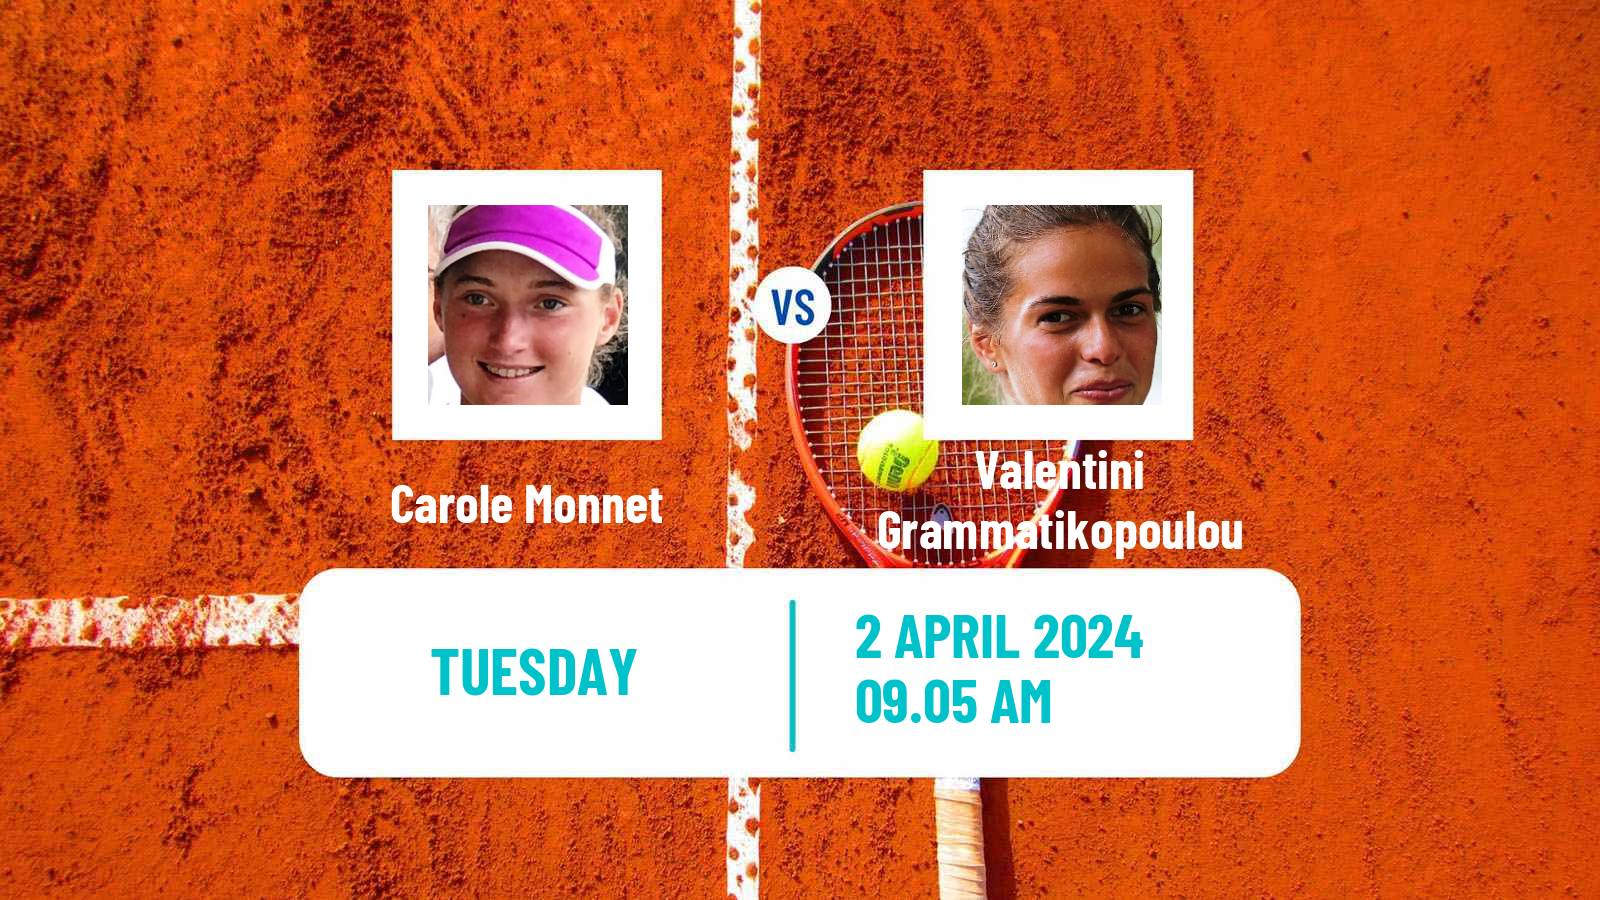 Tennis ITF W75 Split Women Carole Monnet - Valentini Grammatikopoulou